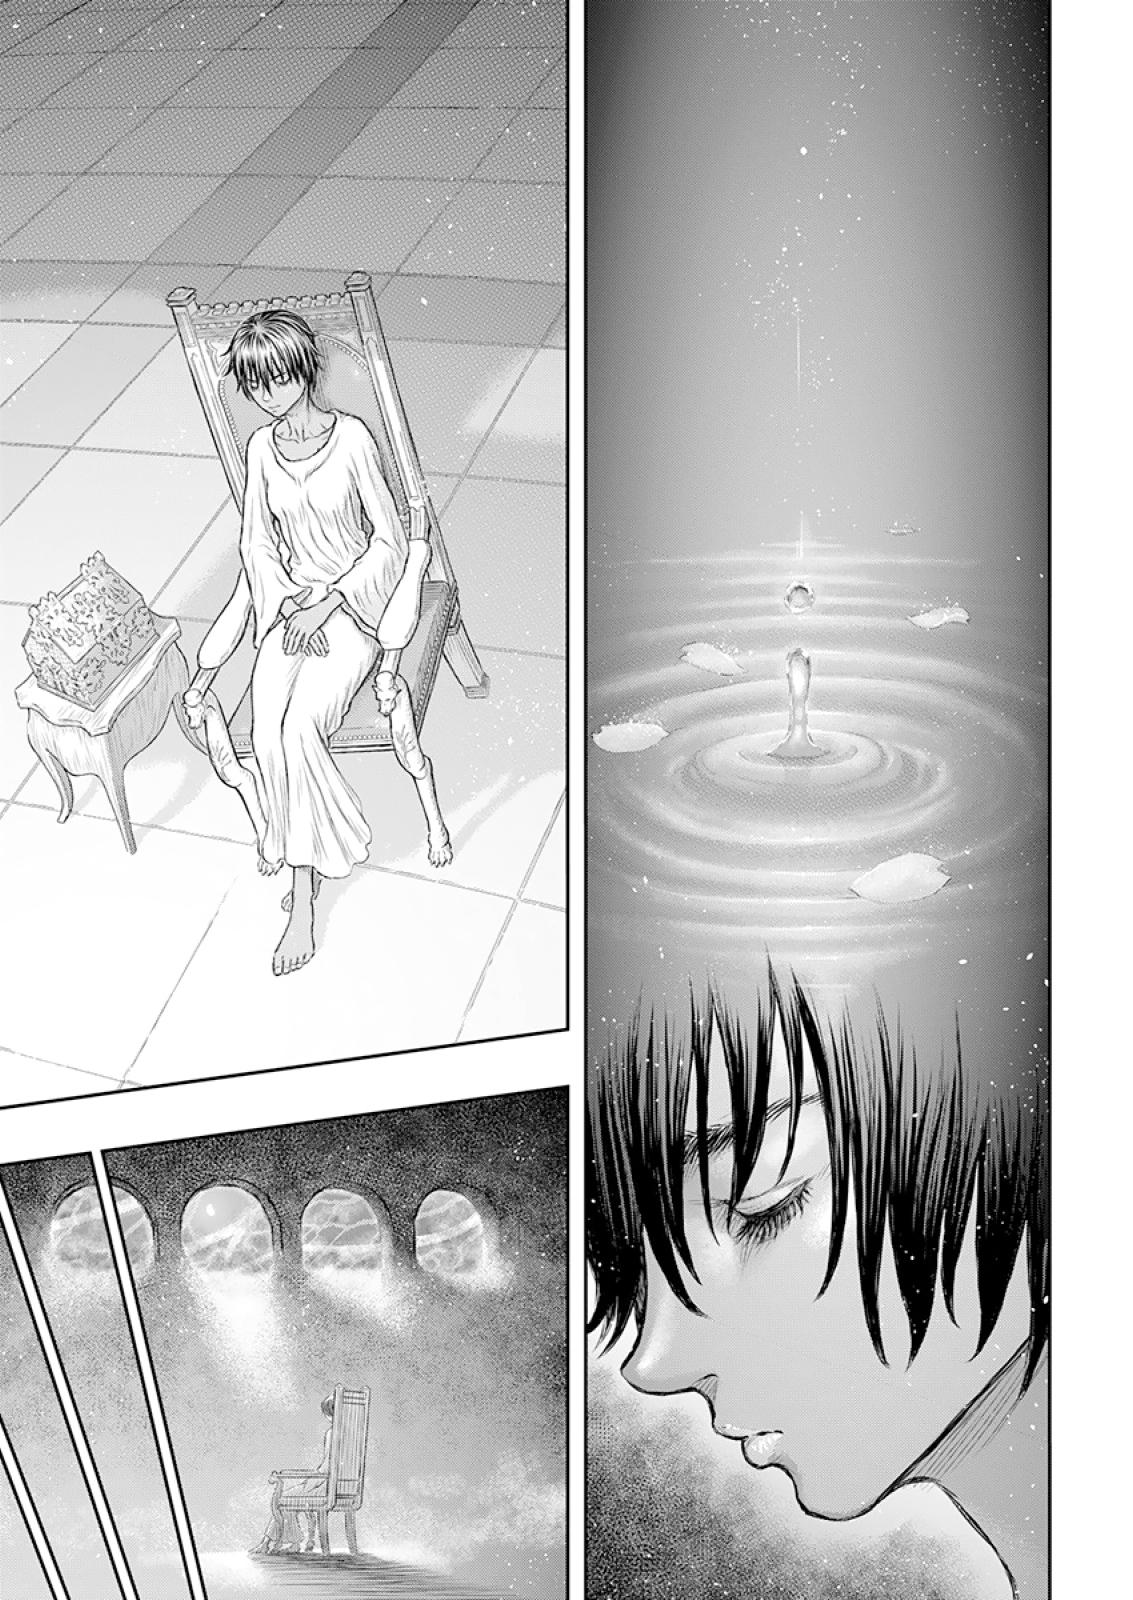 Berserk Manga Chapter 372 image 14